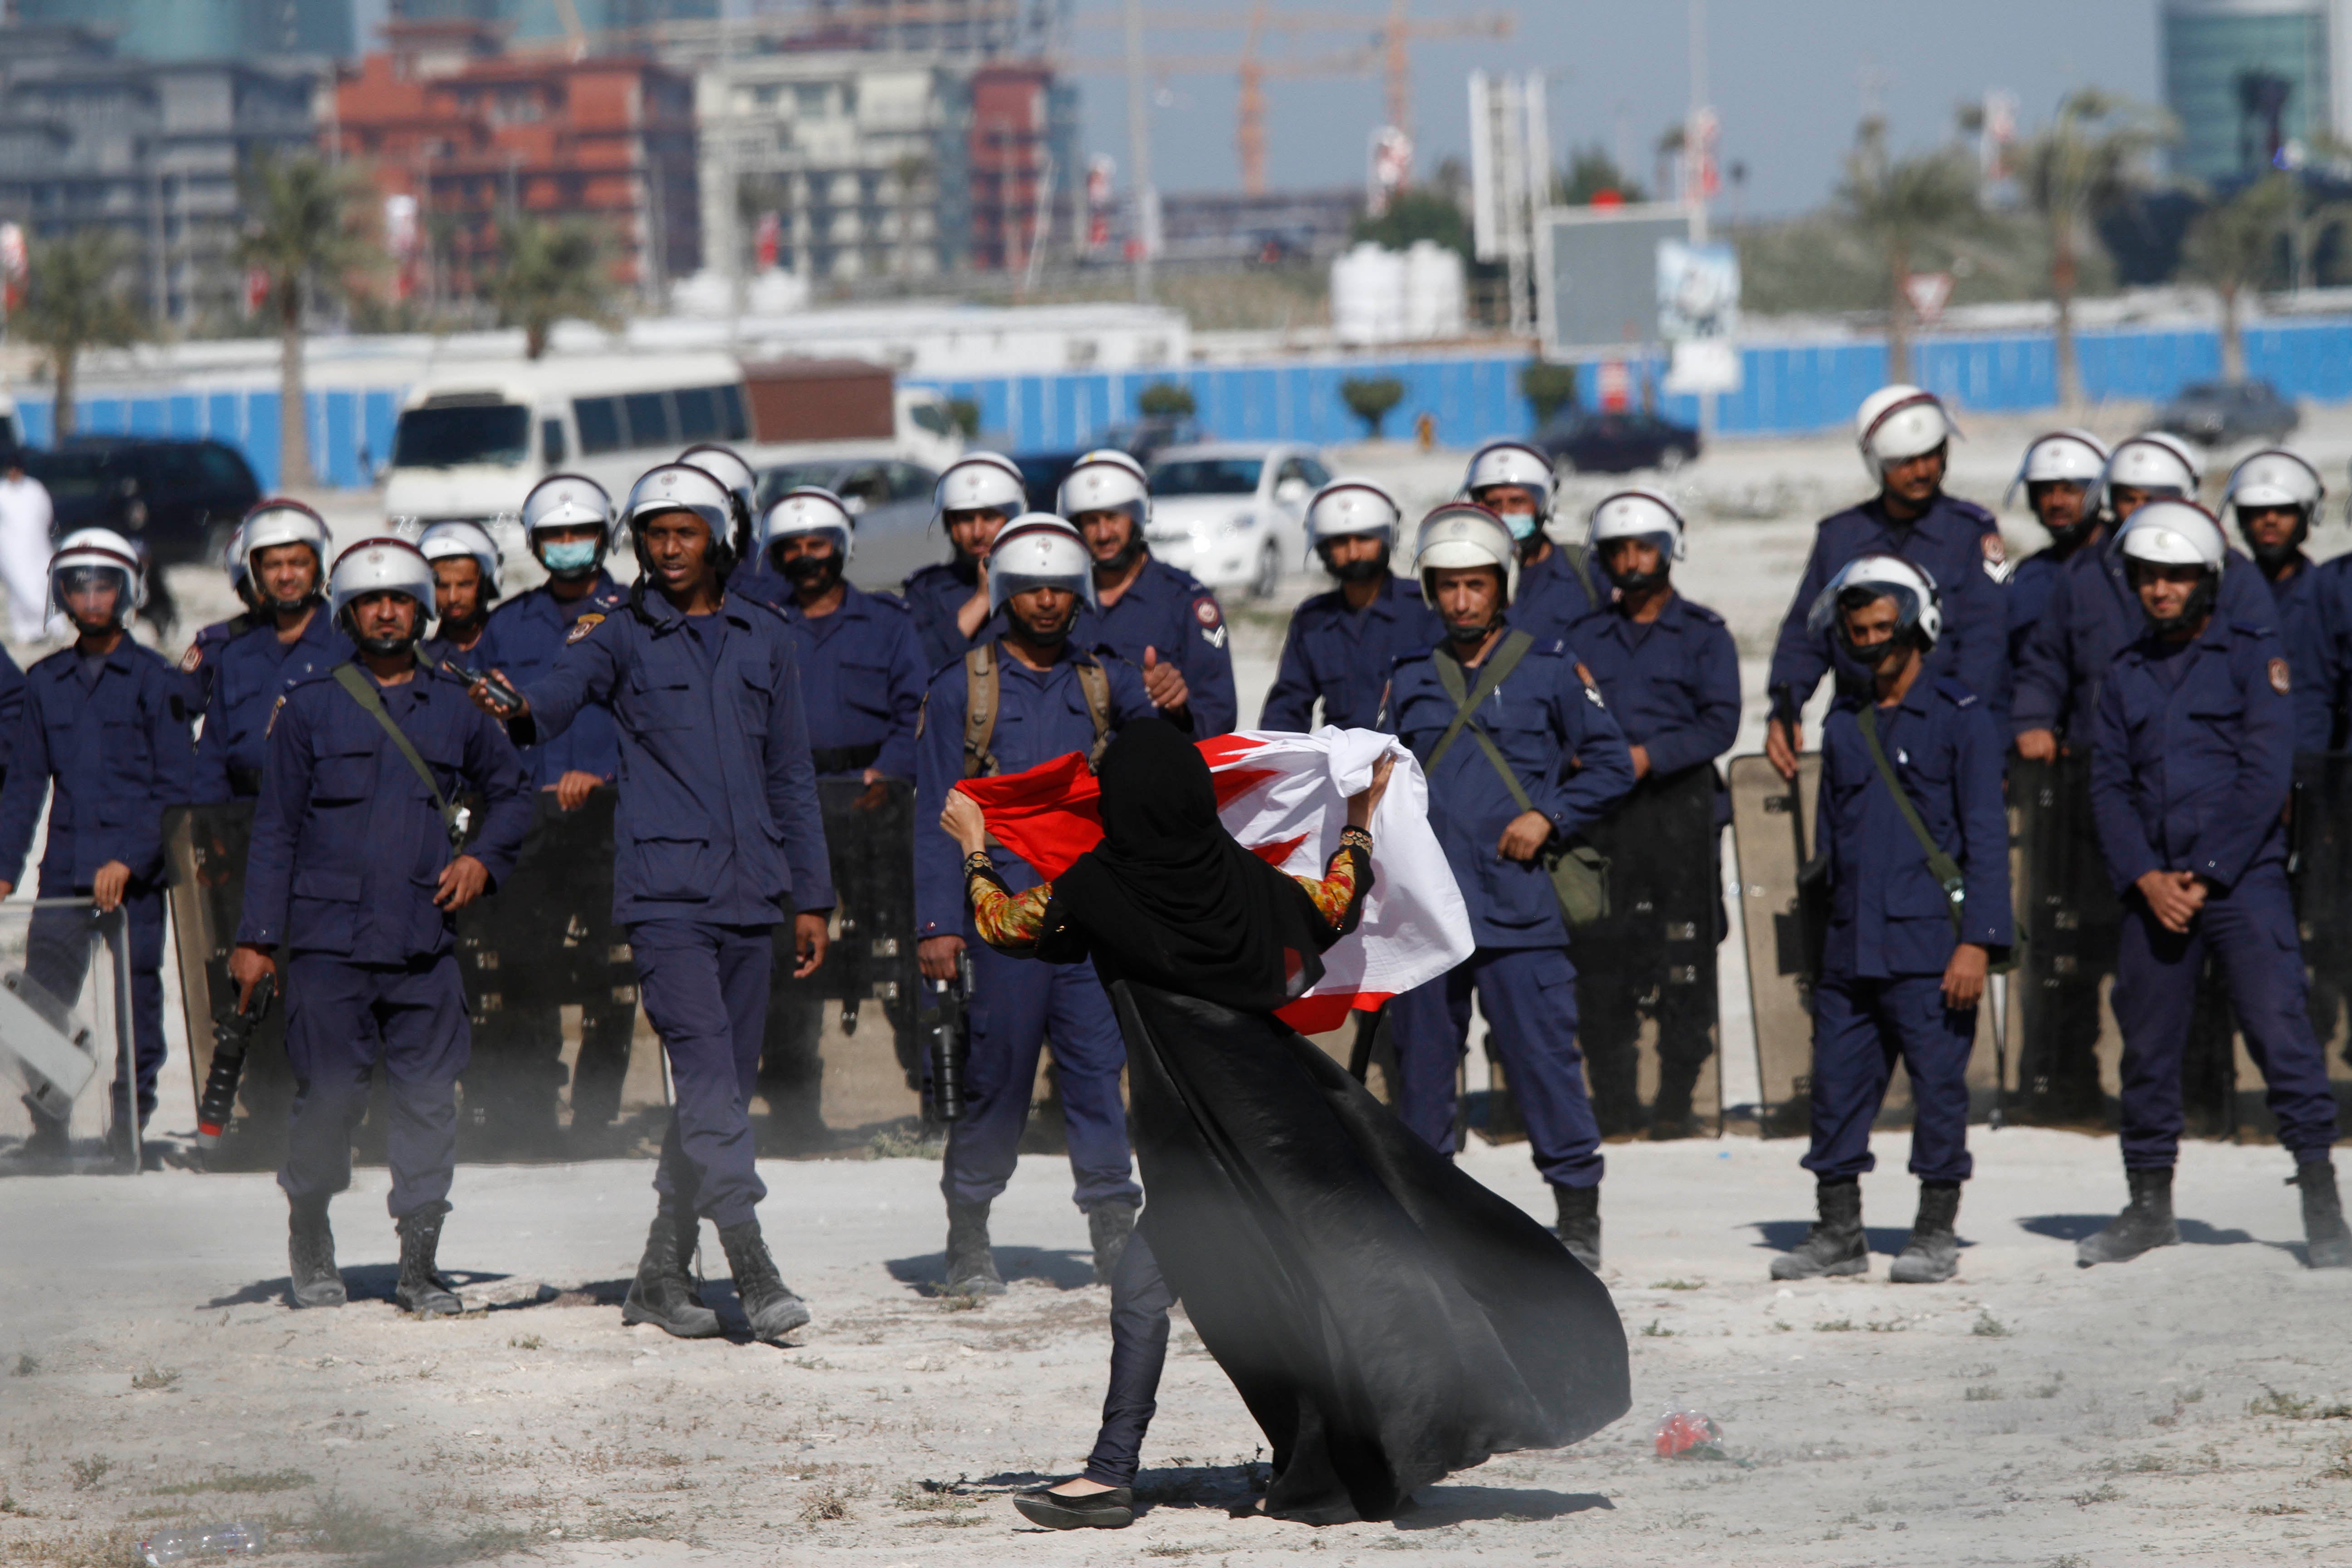 متظاهرة مناهضة للحكومة تلوح بالعلم بالبحريني أمام الشرطة بينما يحتل المتظاهرون دوار اللؤلؤة مجددا في 19 فبراير/شباط 2011 في المنامة، البحرين. بعد مرور عشر سنوات على الاحتجاجات المناهضة للحكومة، سُحِقت جميع أشكال المعارضة تقريبا.